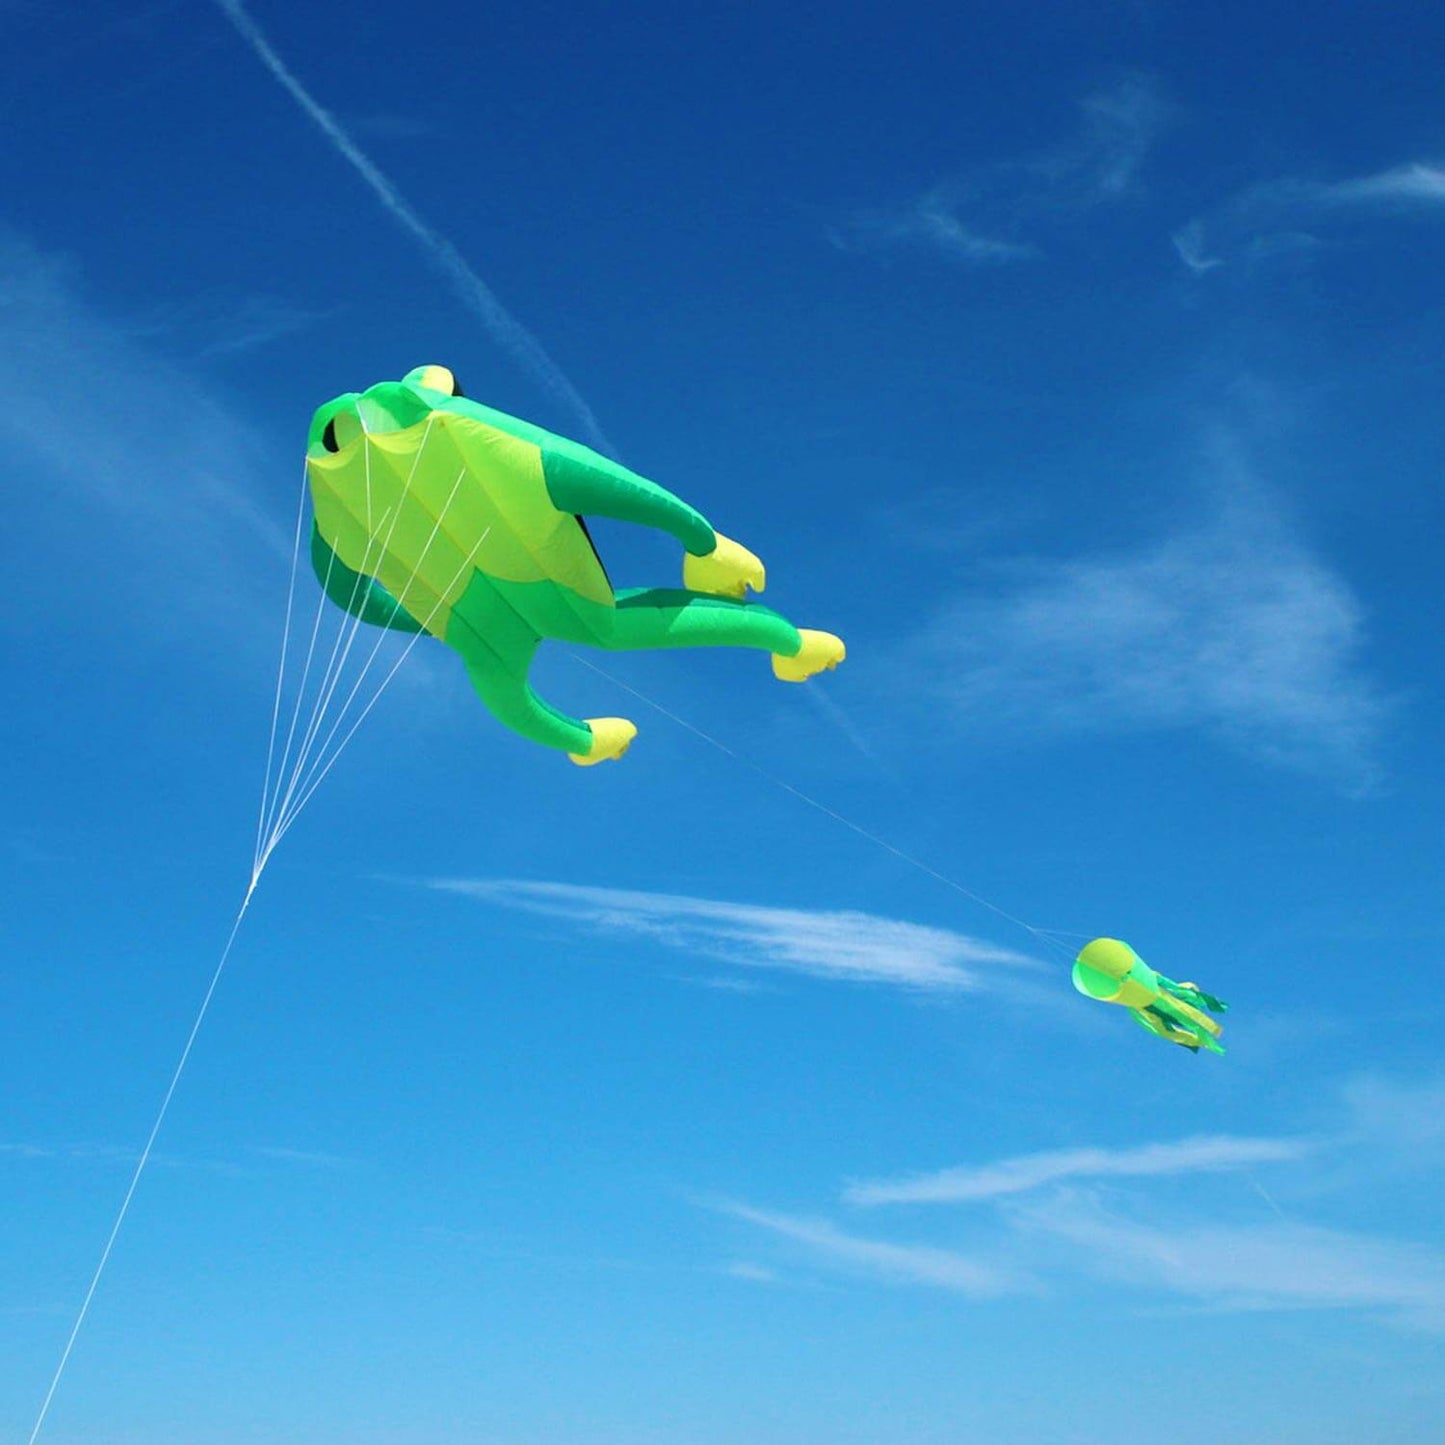 Wolkensturmer Fritz the frog 3d foil kite